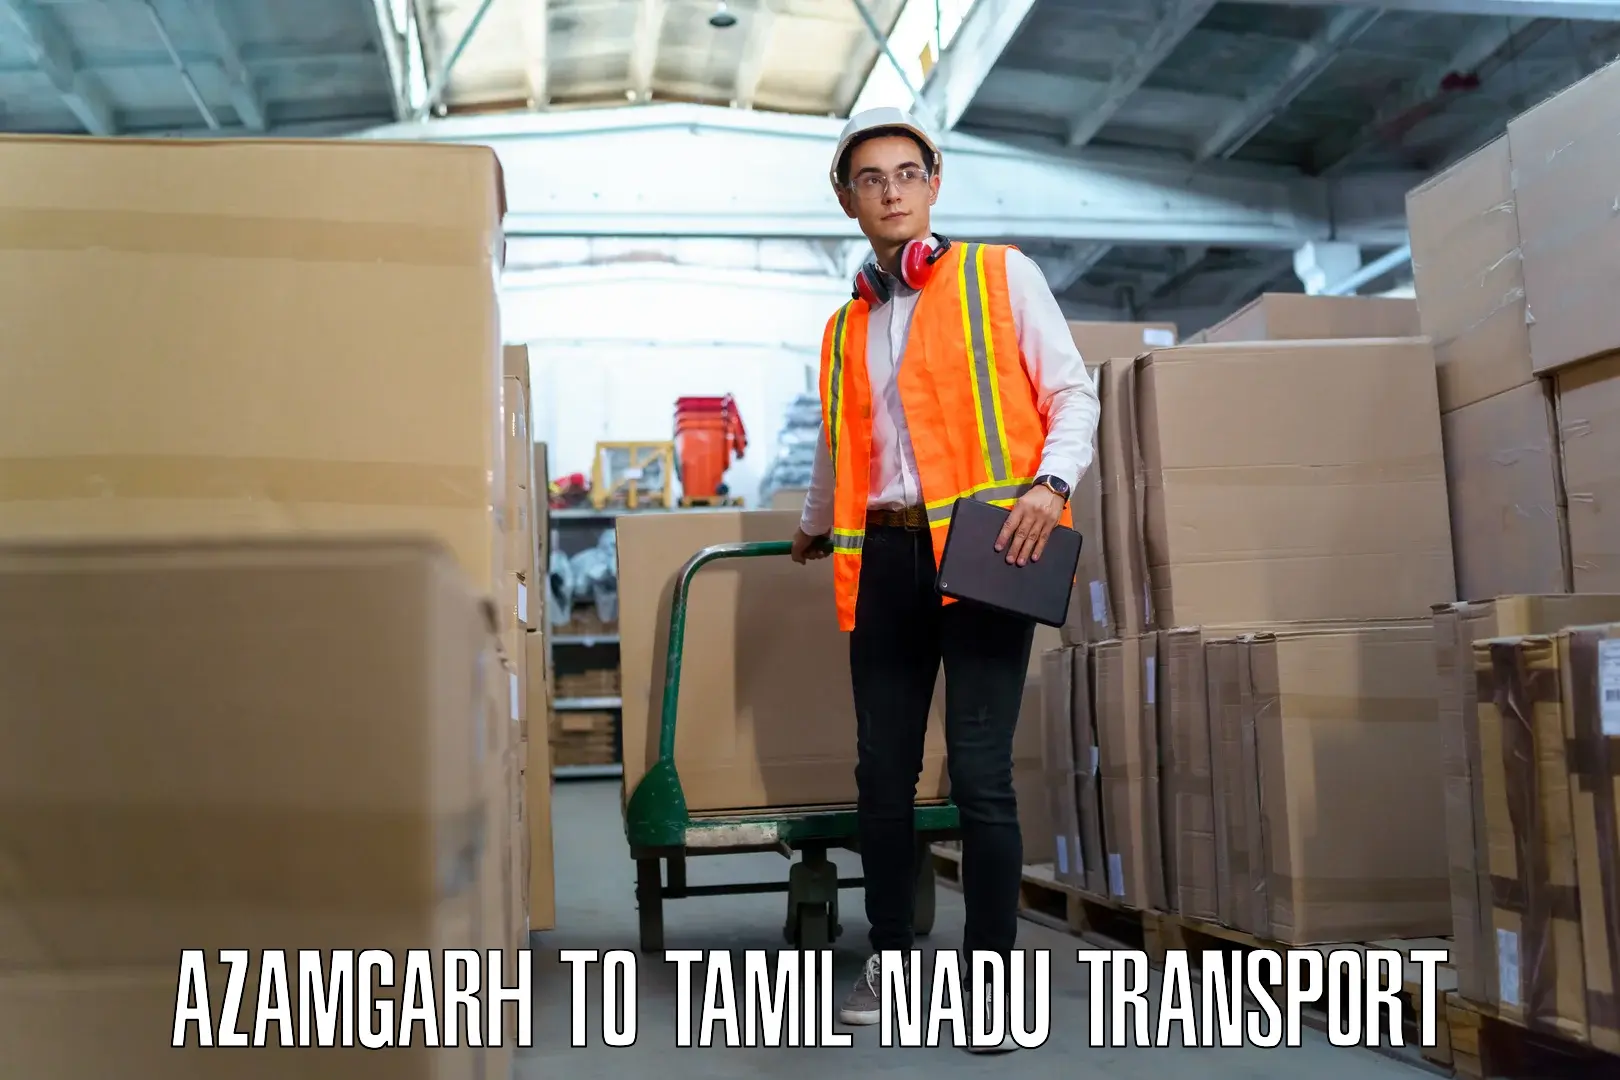 Pick up transport service Azamgarh to Tamil Nadu